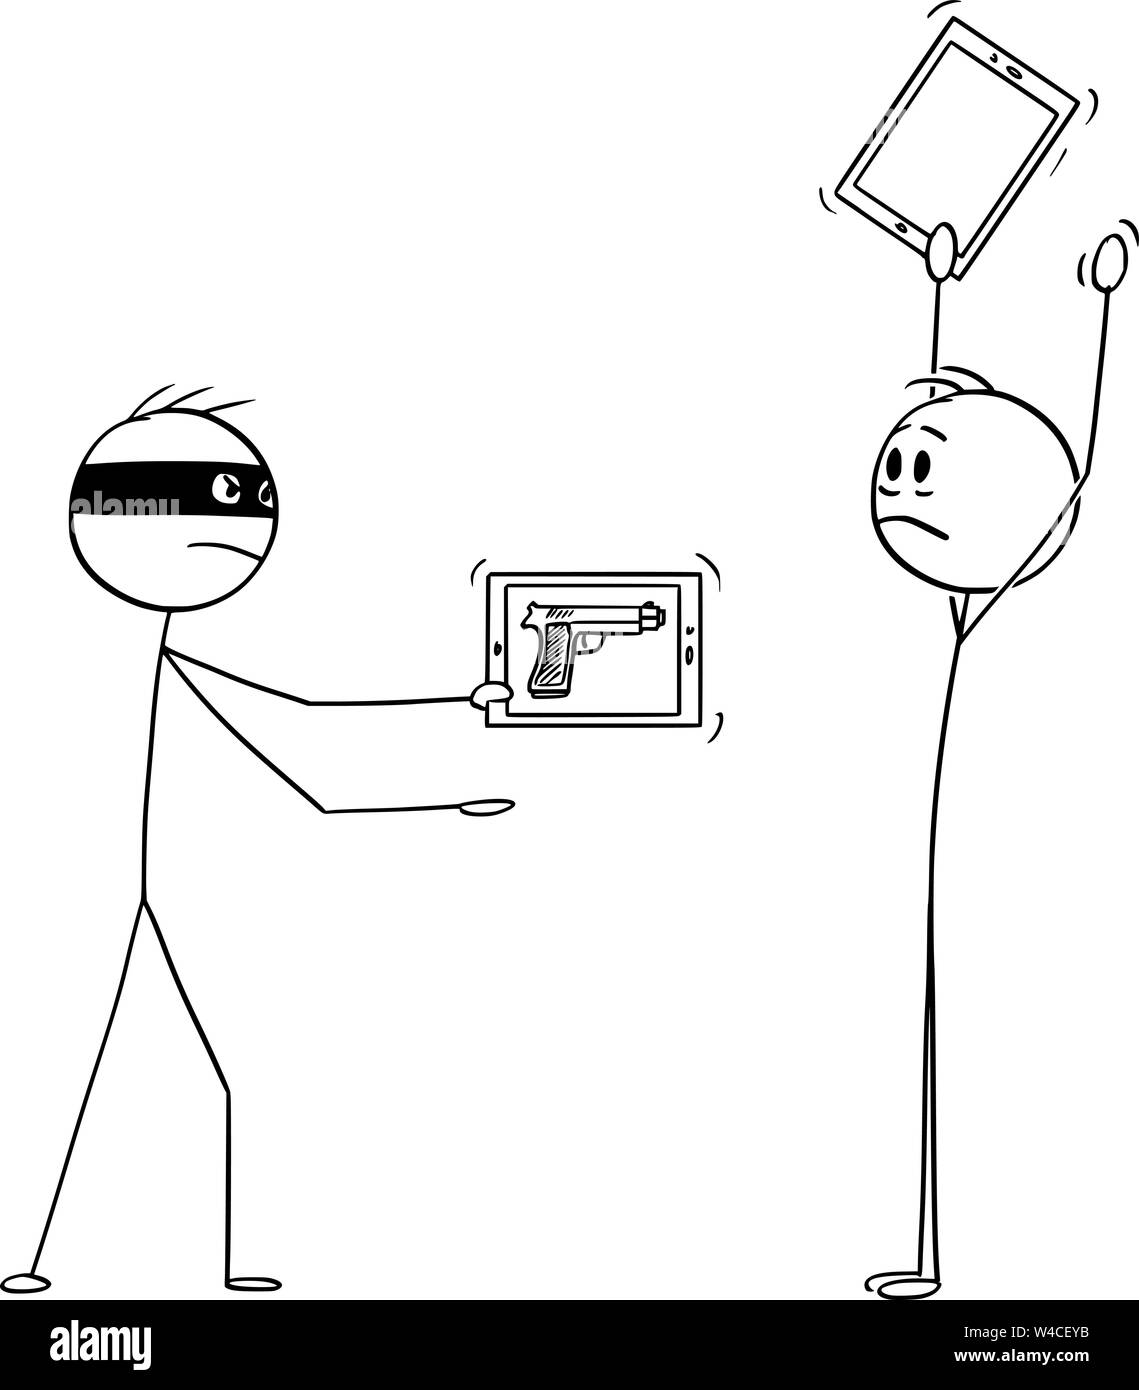 Vektor cartoon Strichmännchen Zeichnen konzeptionelle Darstellung der maskierten Kriminellen oder Räuber mit virtuellen Pistole, als Bild auf ein Handy oder Tablet Überfall ein Mann mit hands up. Stock Vektor